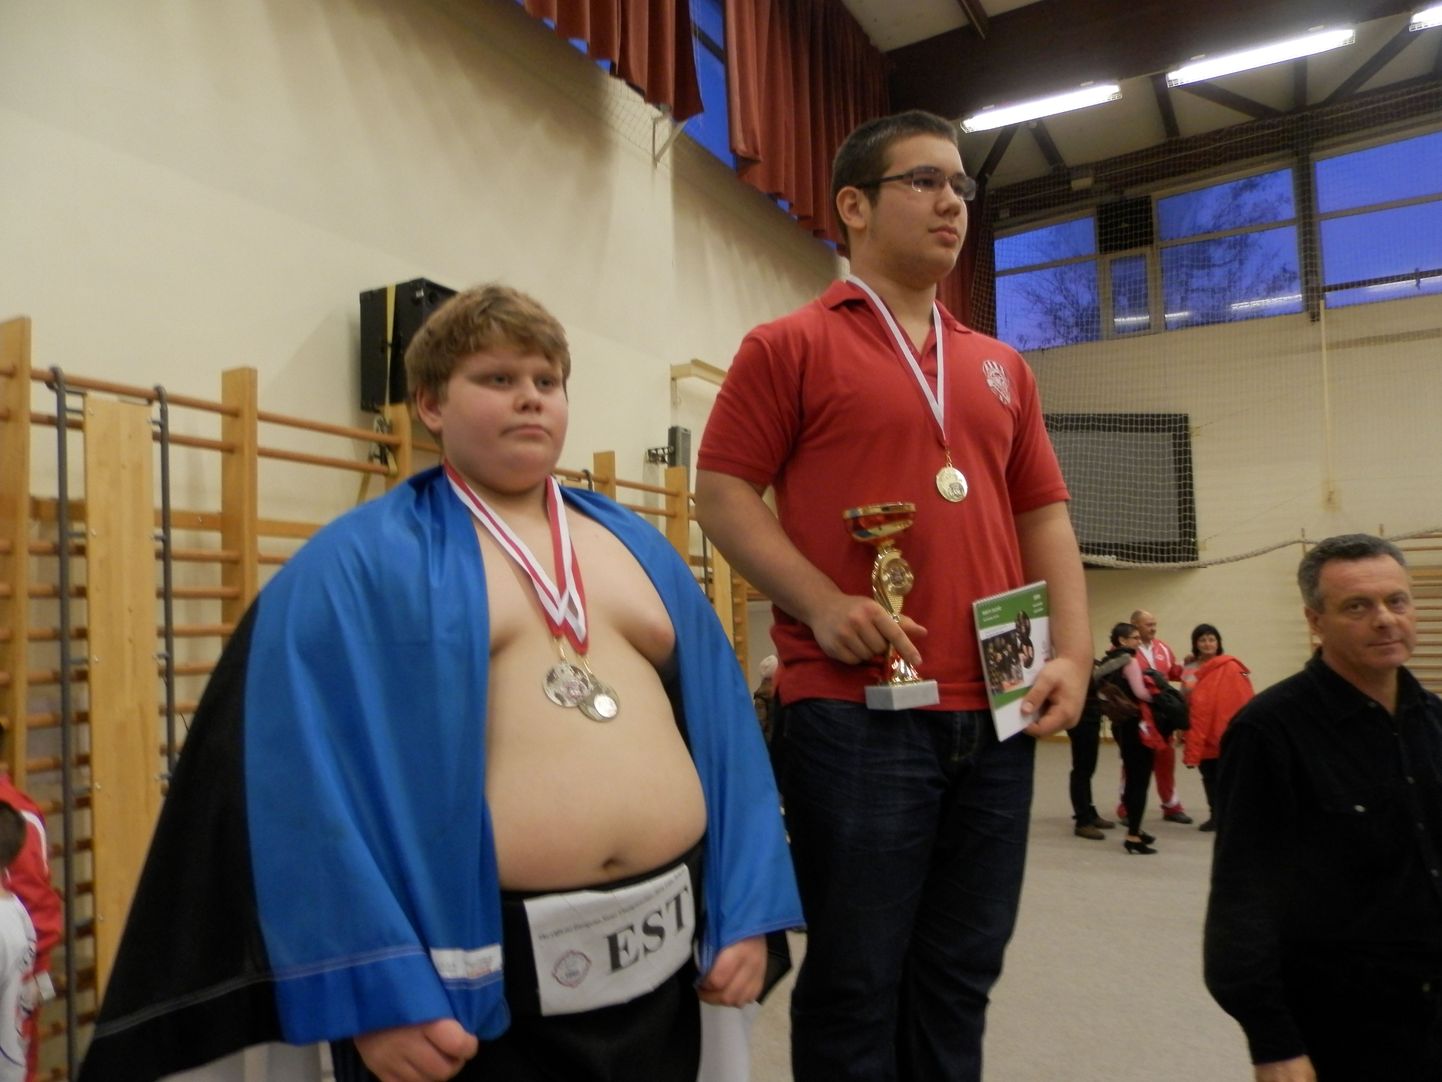 U12 vanuseklassi Euroopa meister raskekaalus Xsander Solbaja (vasakul) näitas Ungaris peetud võistlusel, et on konkurentsivõimeline ka kadettide raskekaalus. Nüüd tuleb võimalus tõestada ennast maailmameistrivõistlustel.